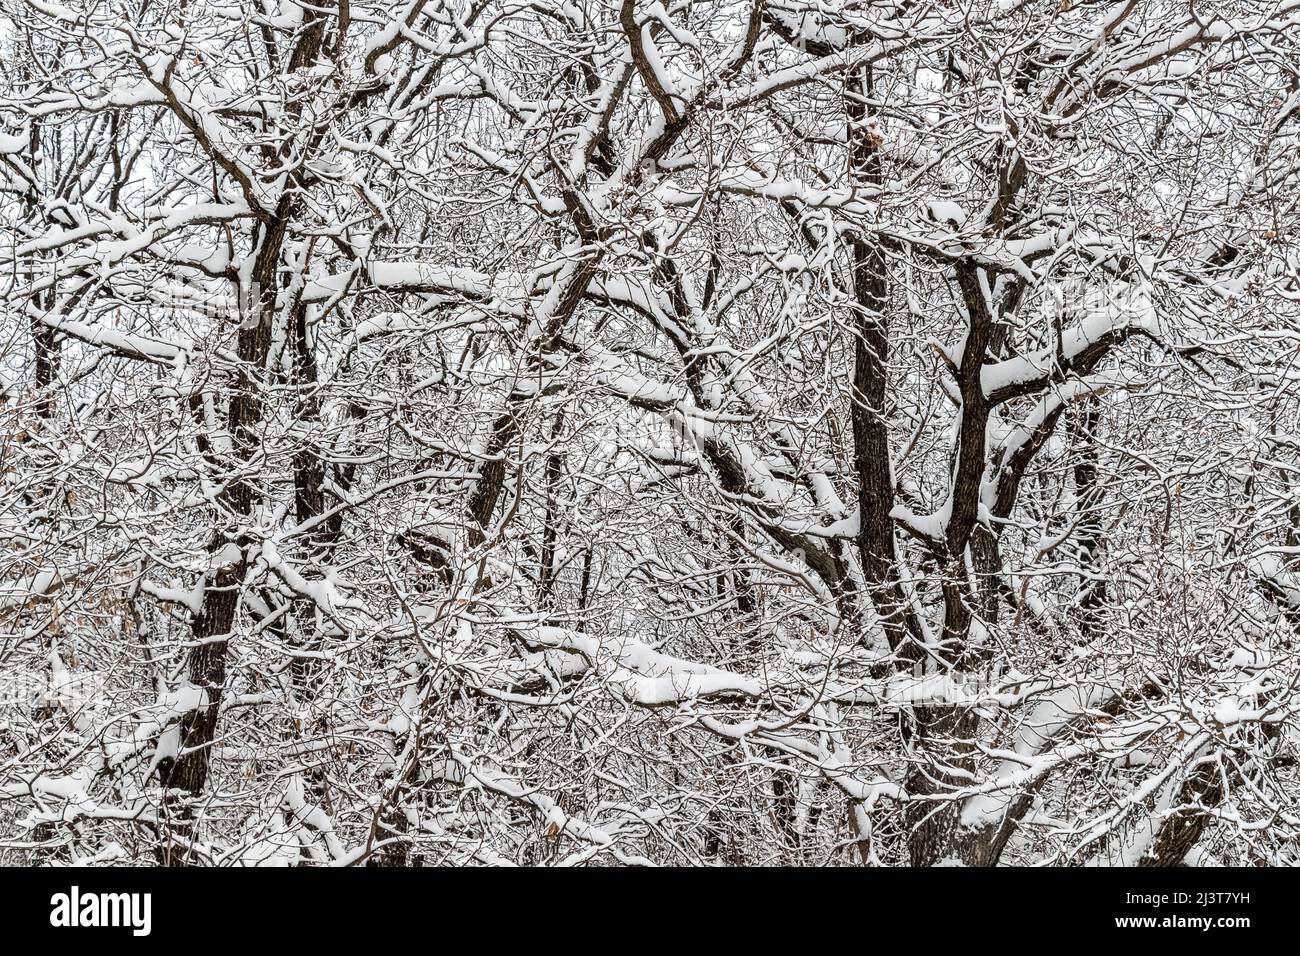 Neige douce et moelleuse sur les branches des arbres lors d'une journée d'hiver tranquille. Banque D'Images